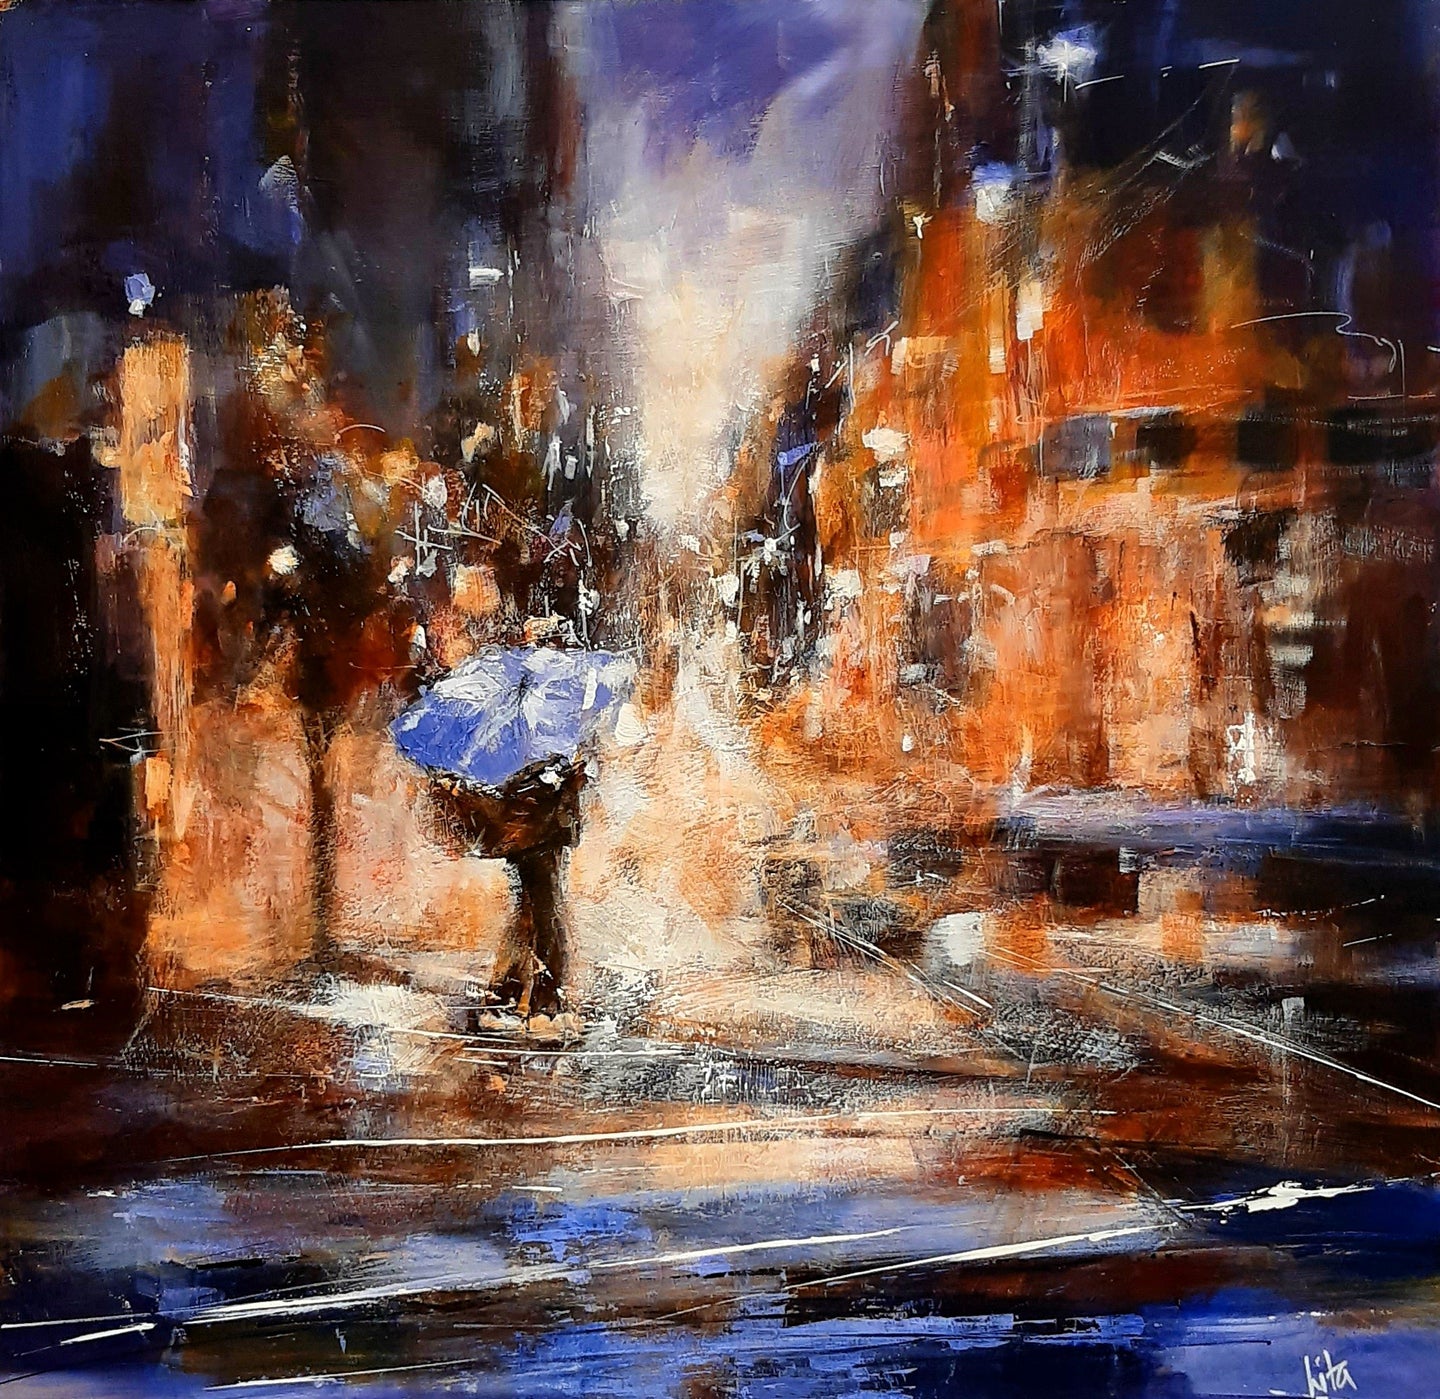 Raining in Manchester by Lita Narayan